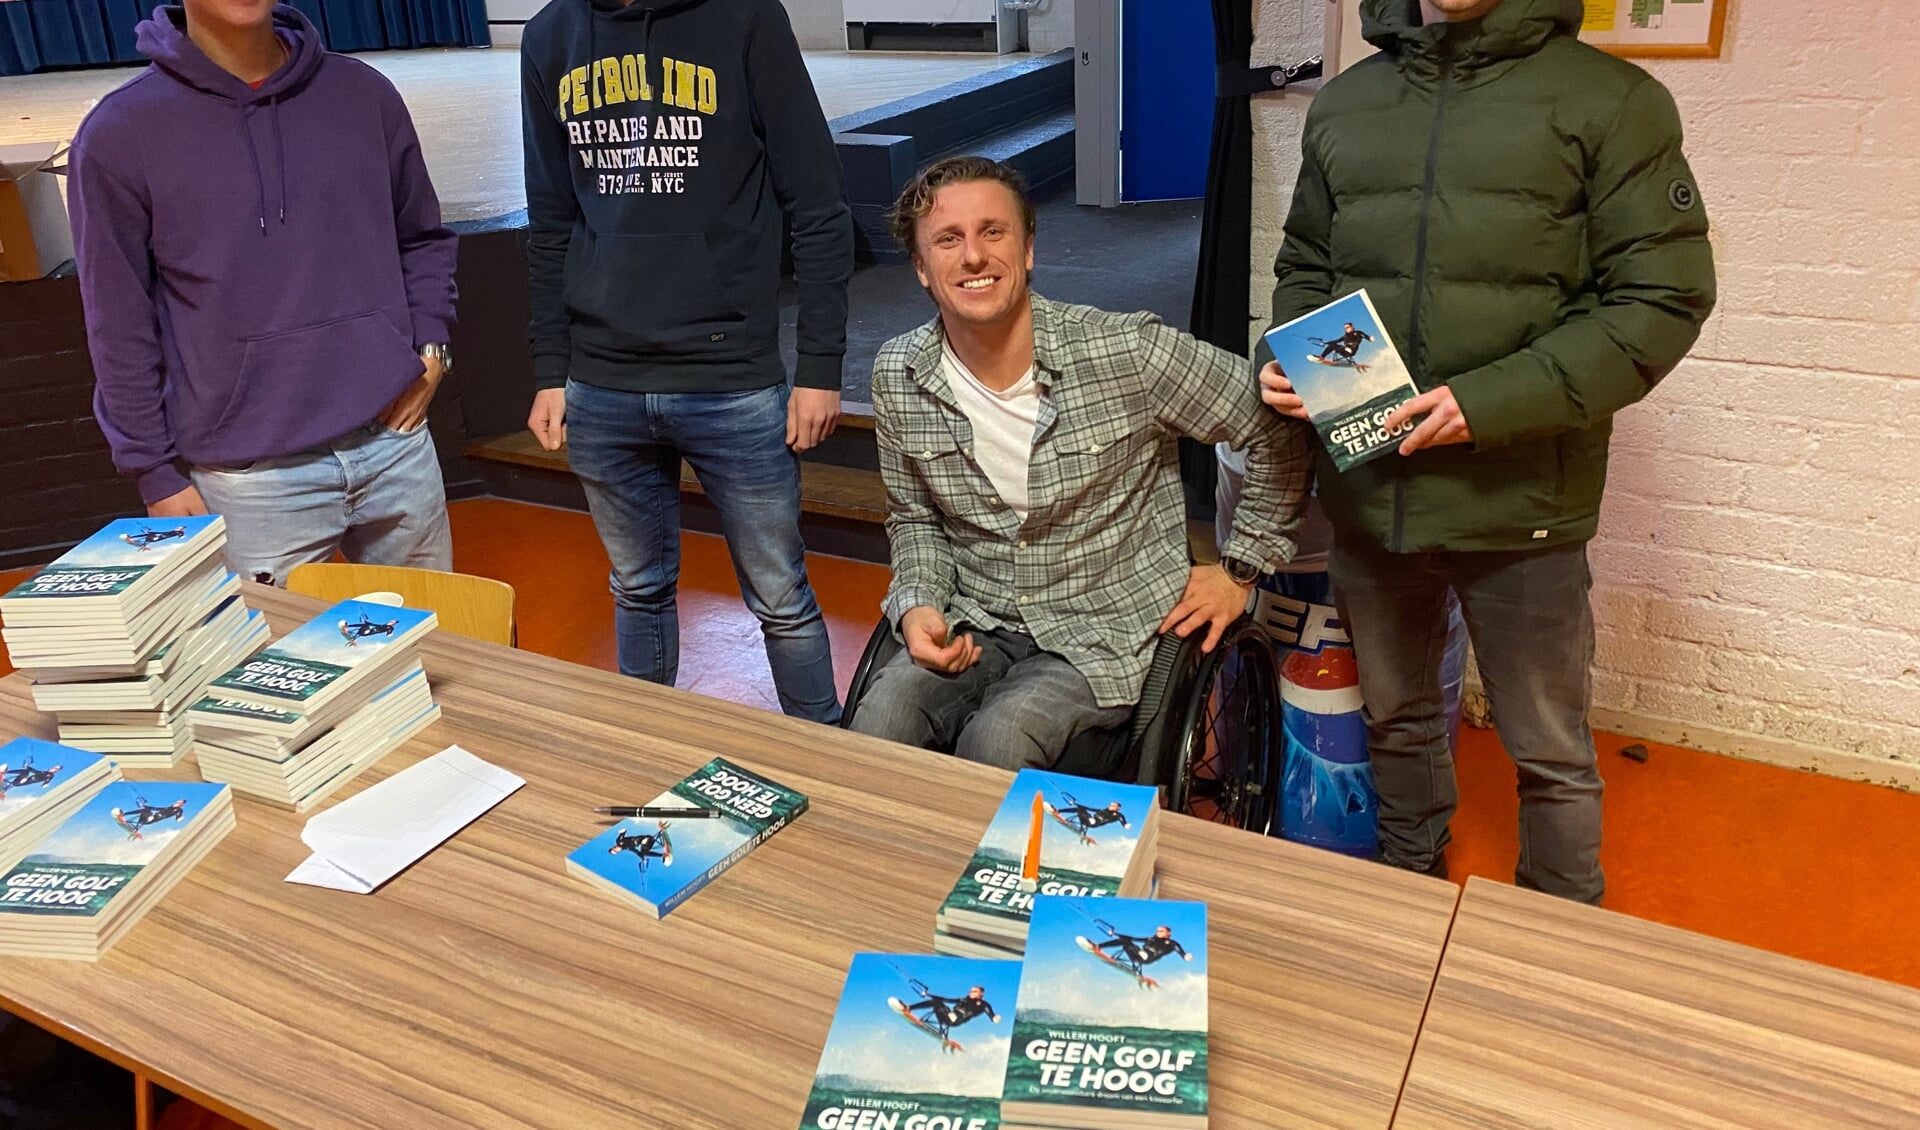 Nick, Jeremy en Jorn van 5 havo lieten hun boek signeren door Willem Hooft. (foto: CC en tekst: Nicole Lamers)